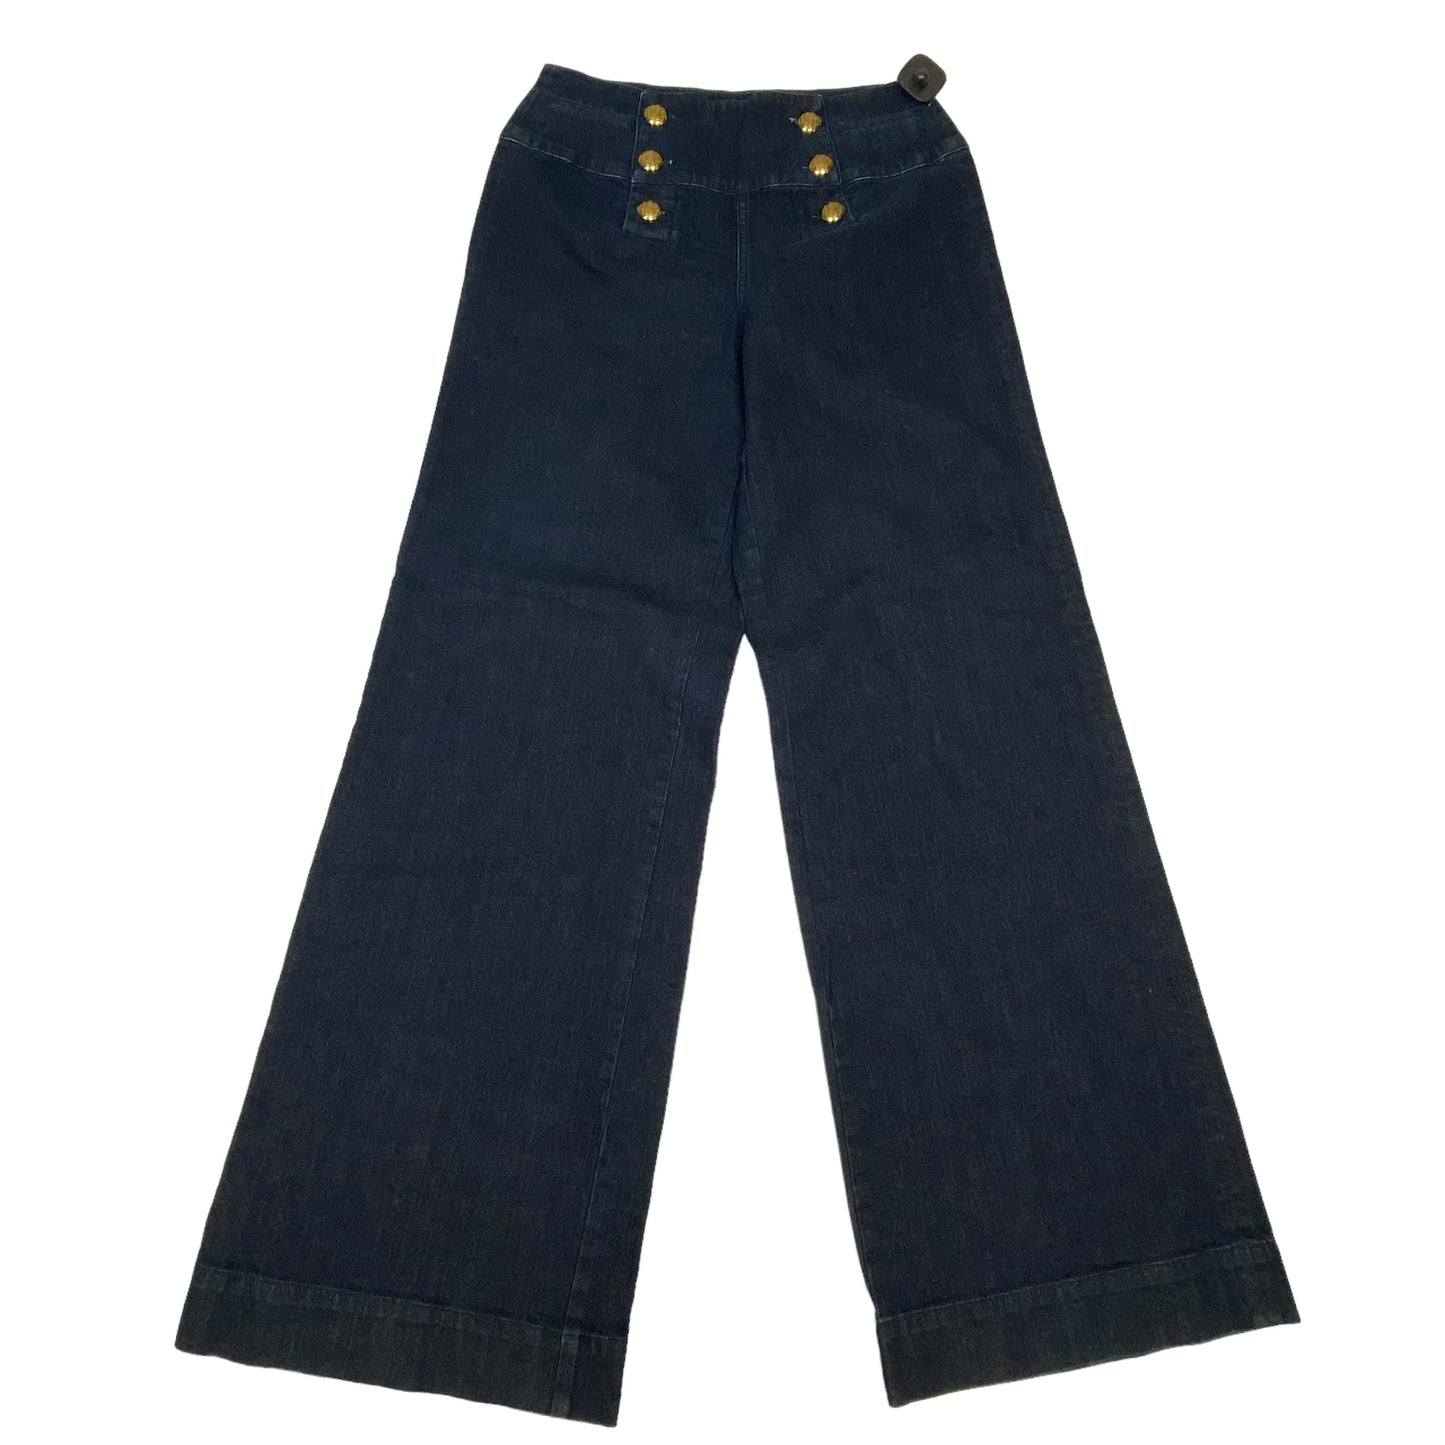 Blue Denim Jeans Wide Leg Lauren Jeans Co, Size 8